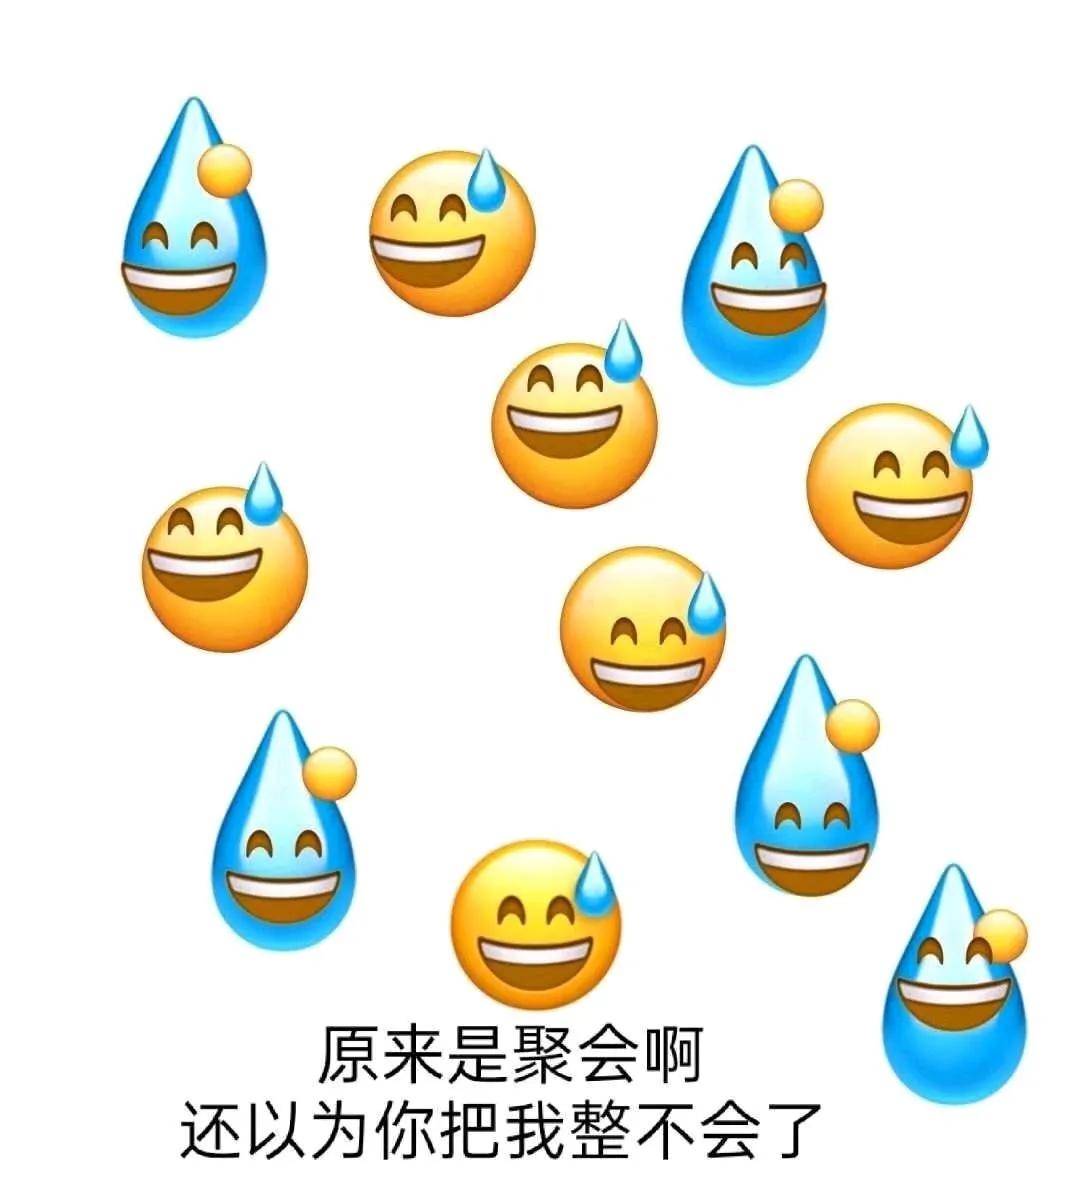 中国人最讨厌的emoji表情包,微笑脸居然只能排第二!